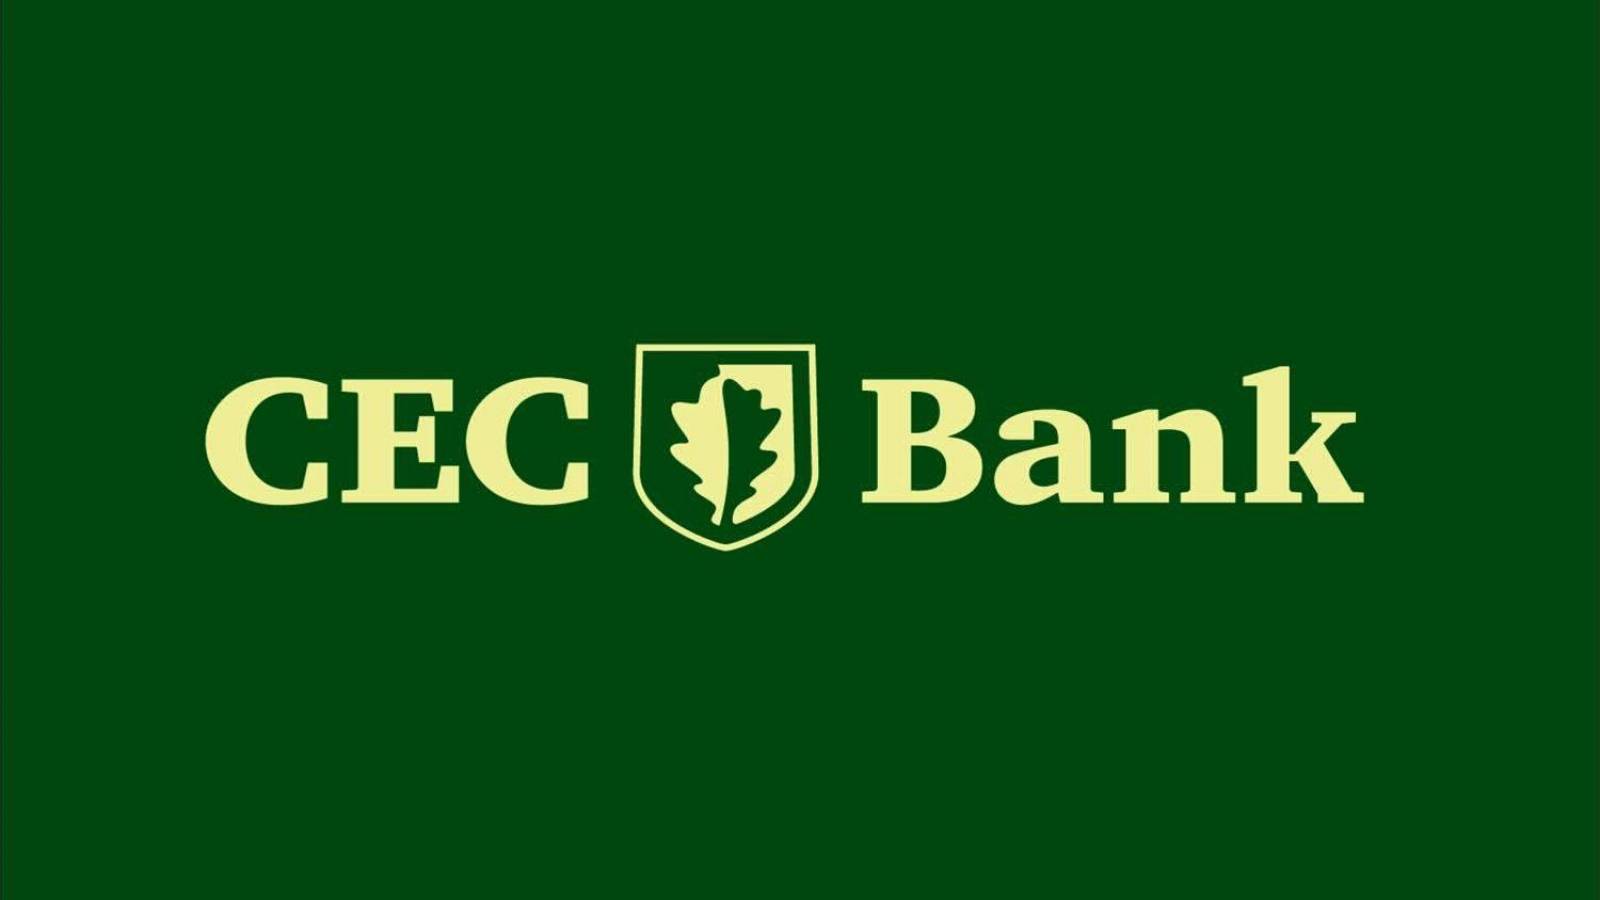 CEC Bank security